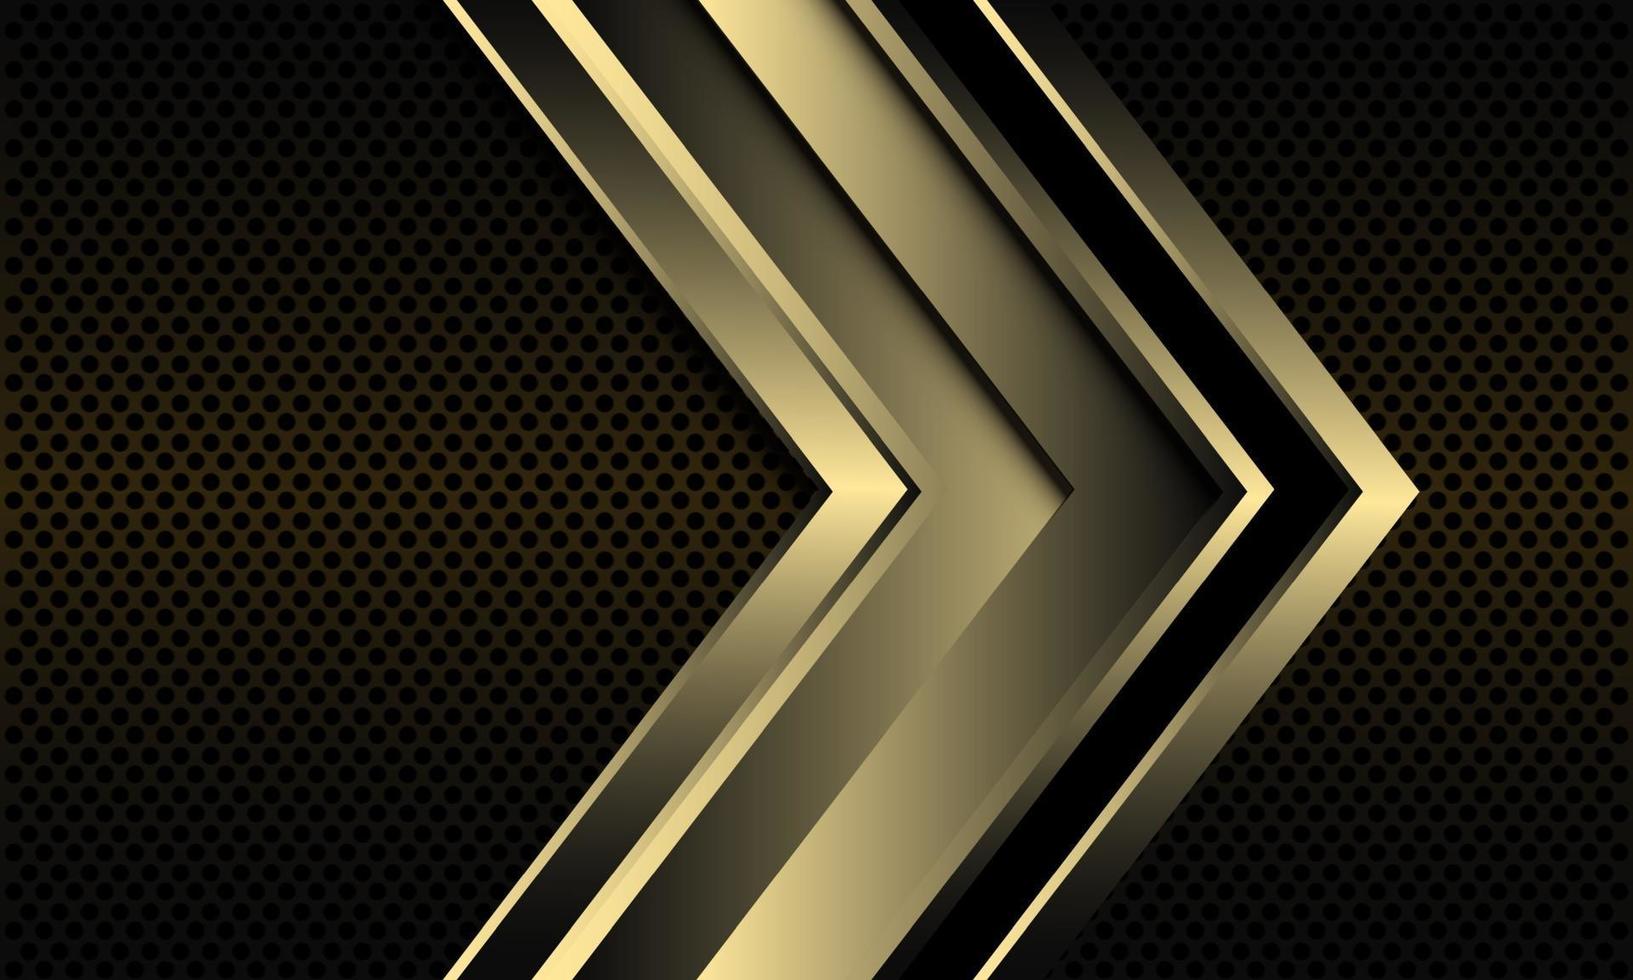 Dirección de flecha de línea negra dorada abstracta en círculo metálico oscuro diseño de malla moderna tecnología futurista de lujo fondo ilustración vectorial vector